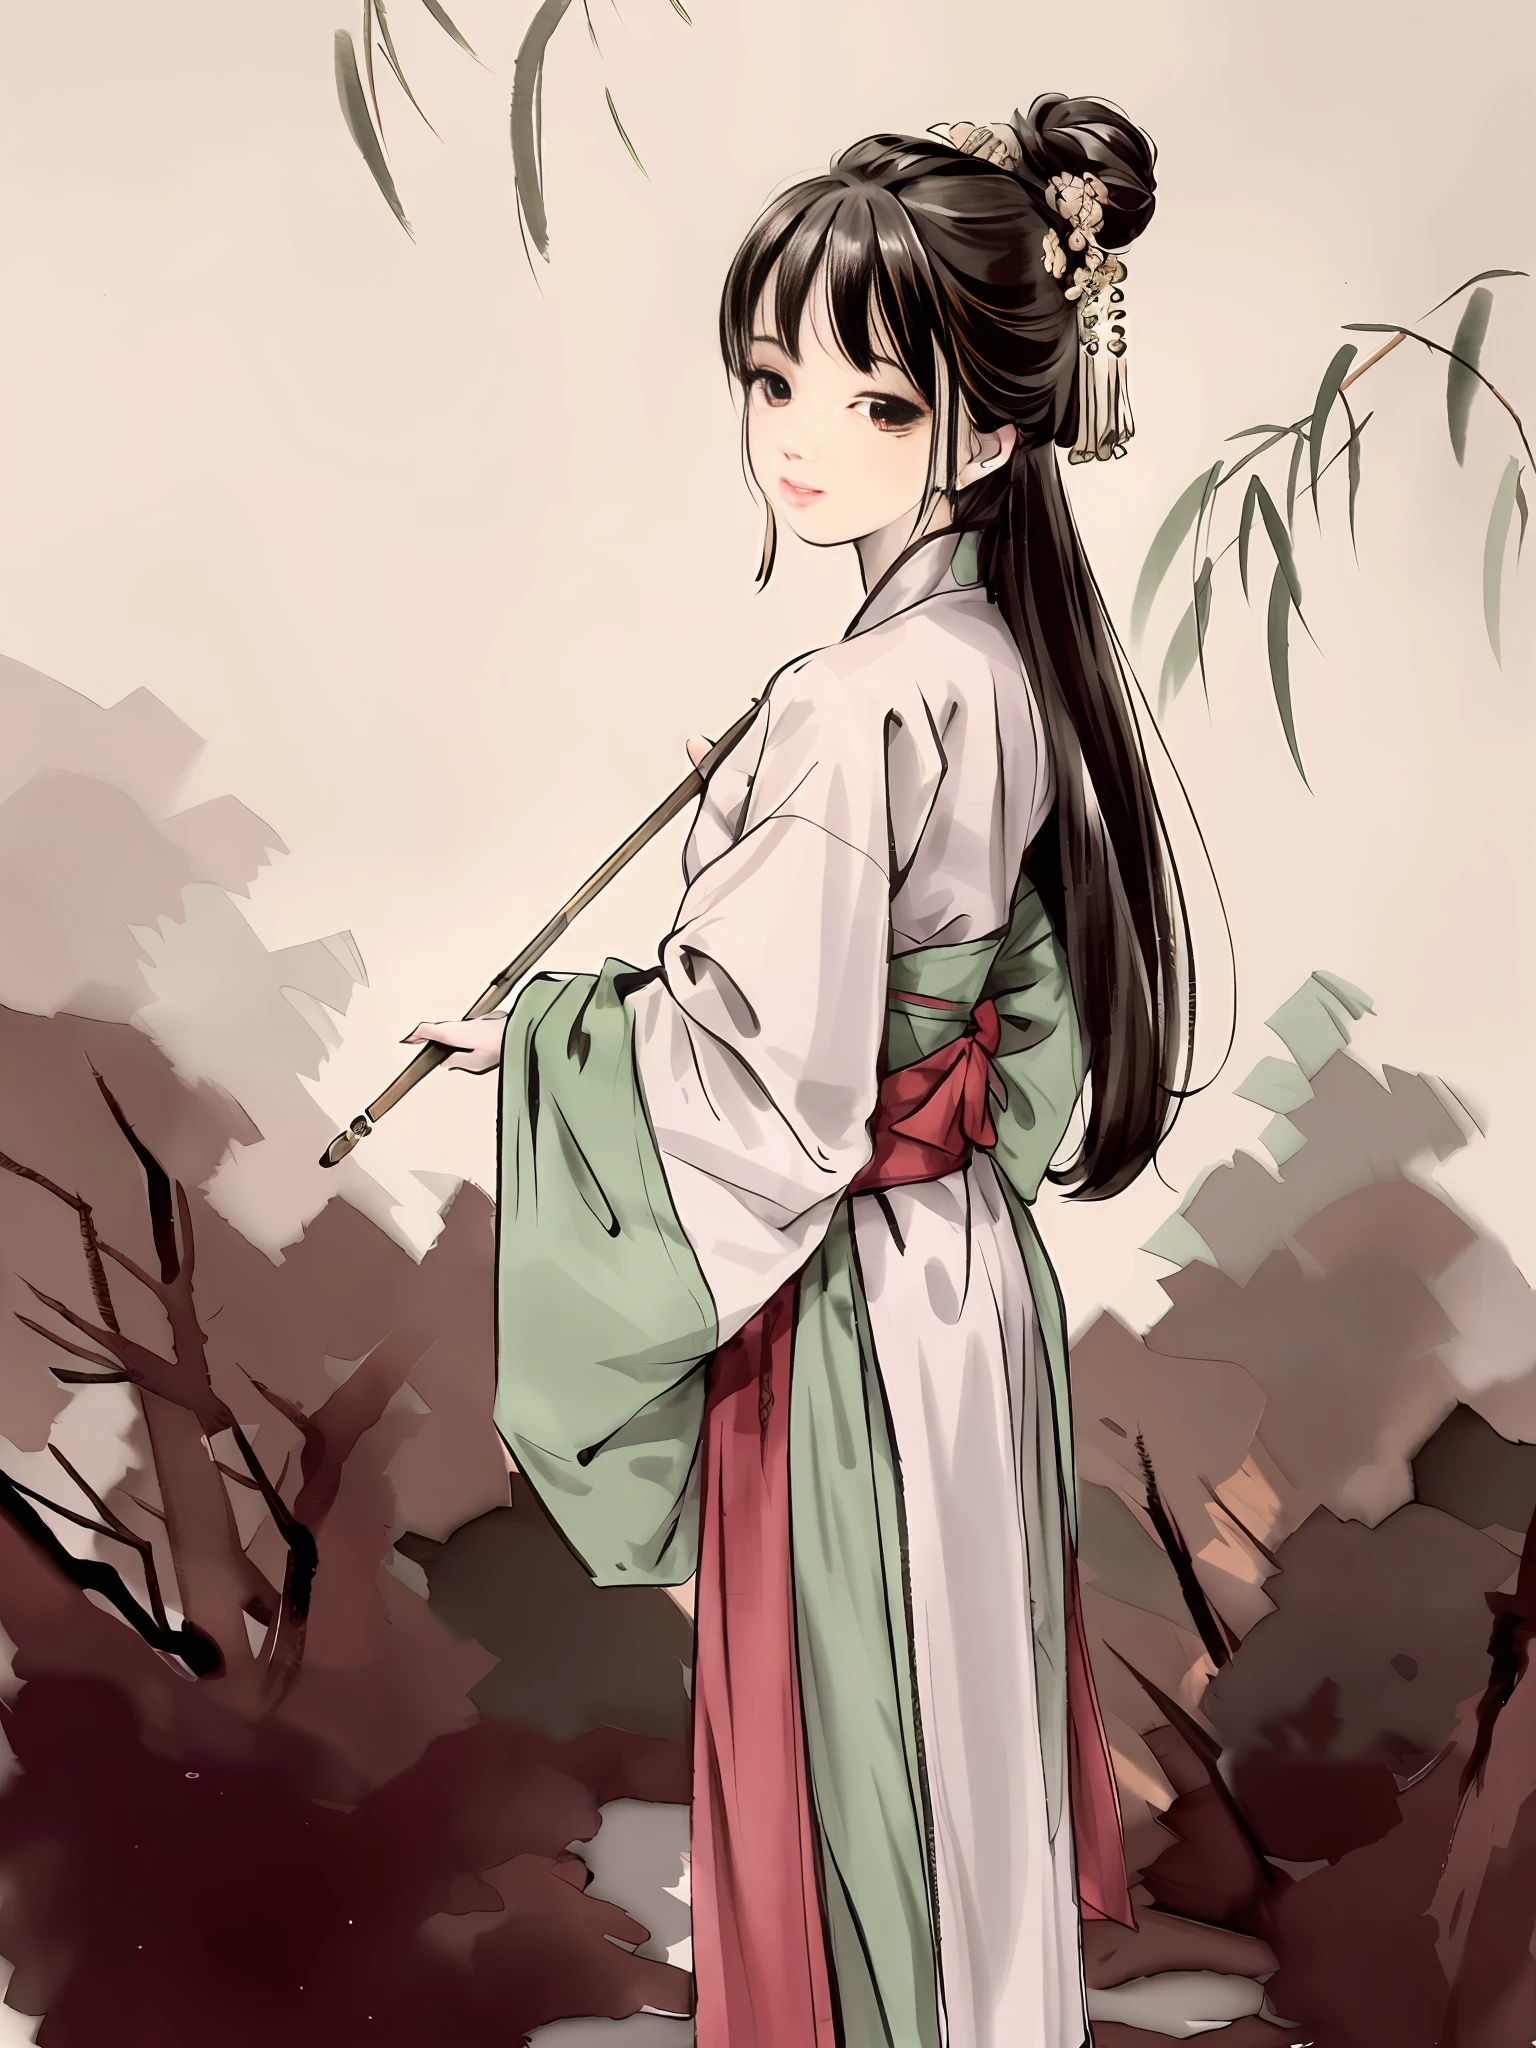 (Obra maestra, mejor calidad: 1.2), pintura tradicional china en tinta, 1 mujer, De pie, mirando hacia atrás, hanfu, rama de sauce, (sonriente), mirando al espectador,